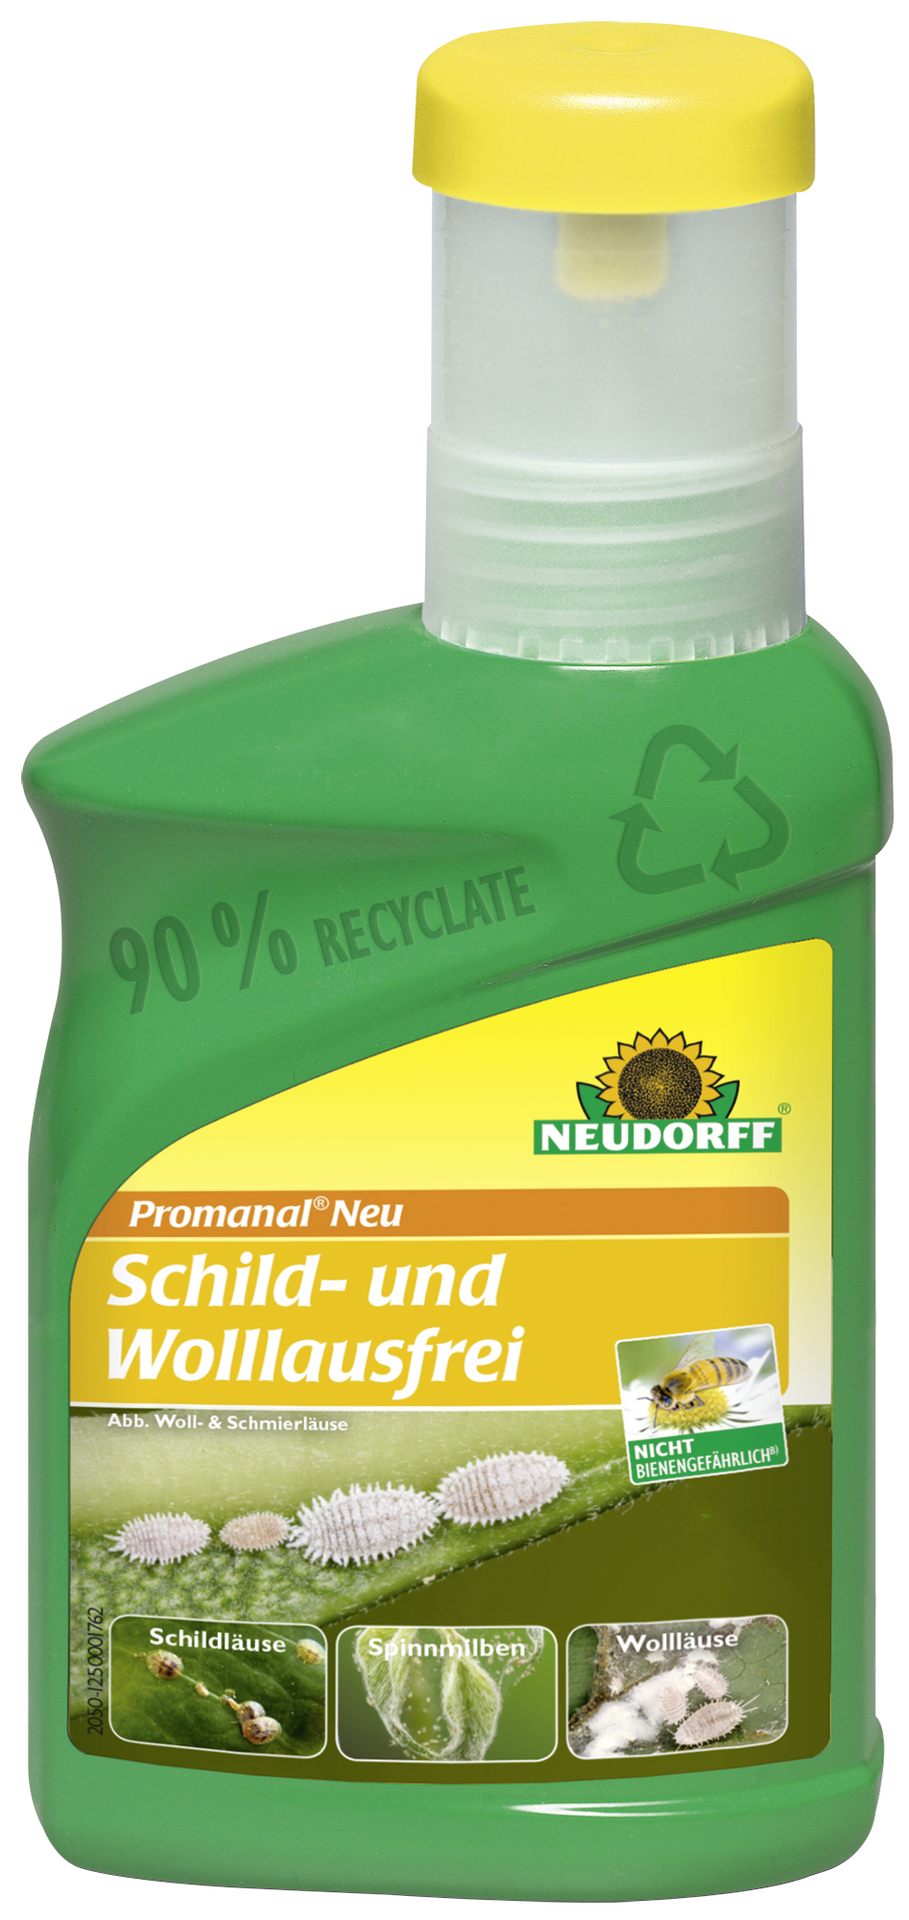 Promanal Neu Schild- und Wollausfrei 250 ml